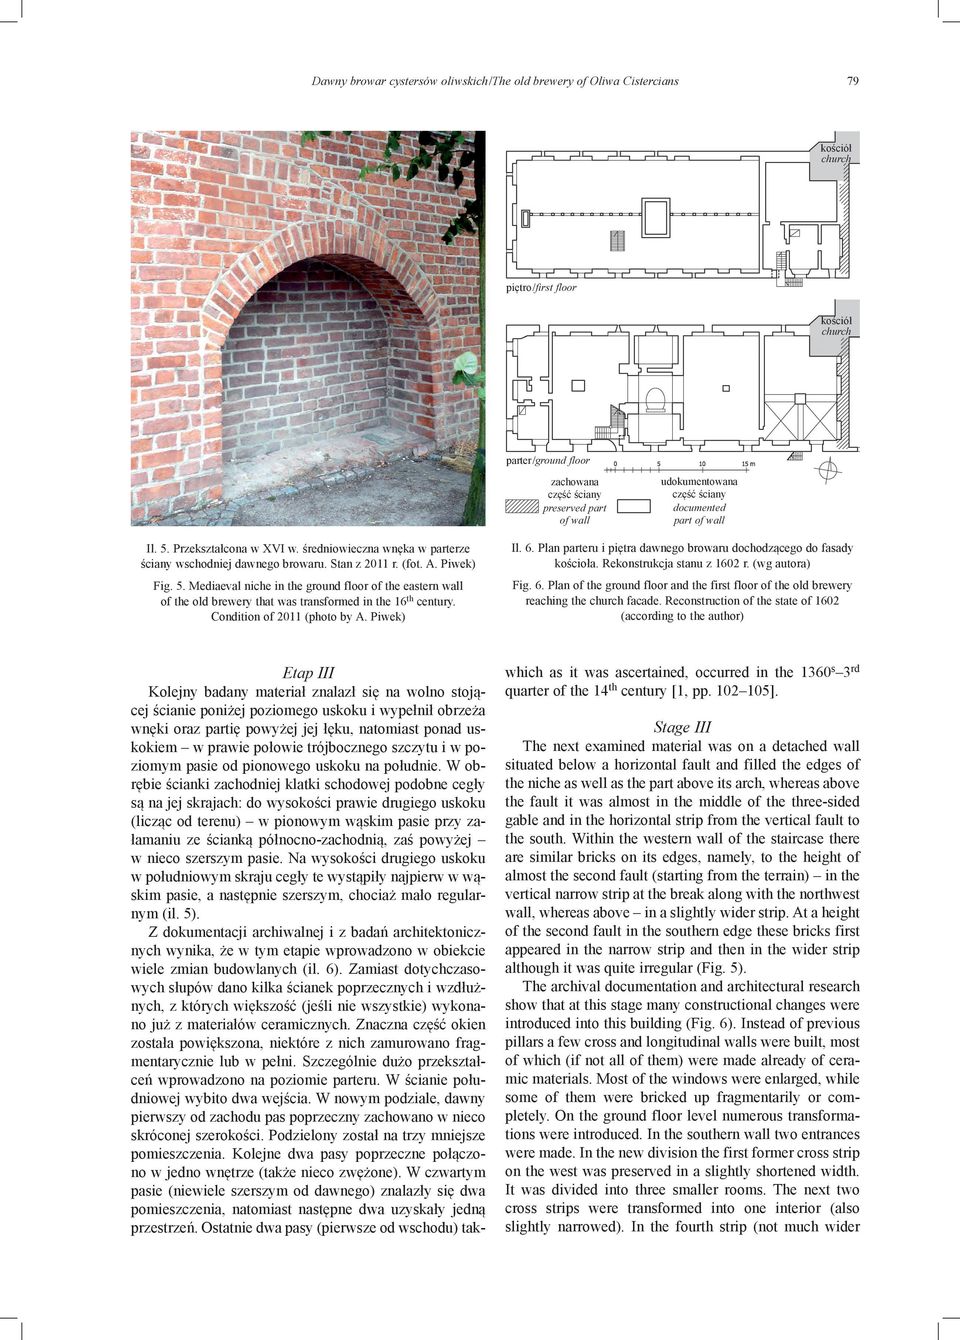 Plan parteru i piętra dawnego browaru dochodzącego do fasady kościoła. Rekonstrukcja stanu z 1602 r. (wg autora) Fig. 5.